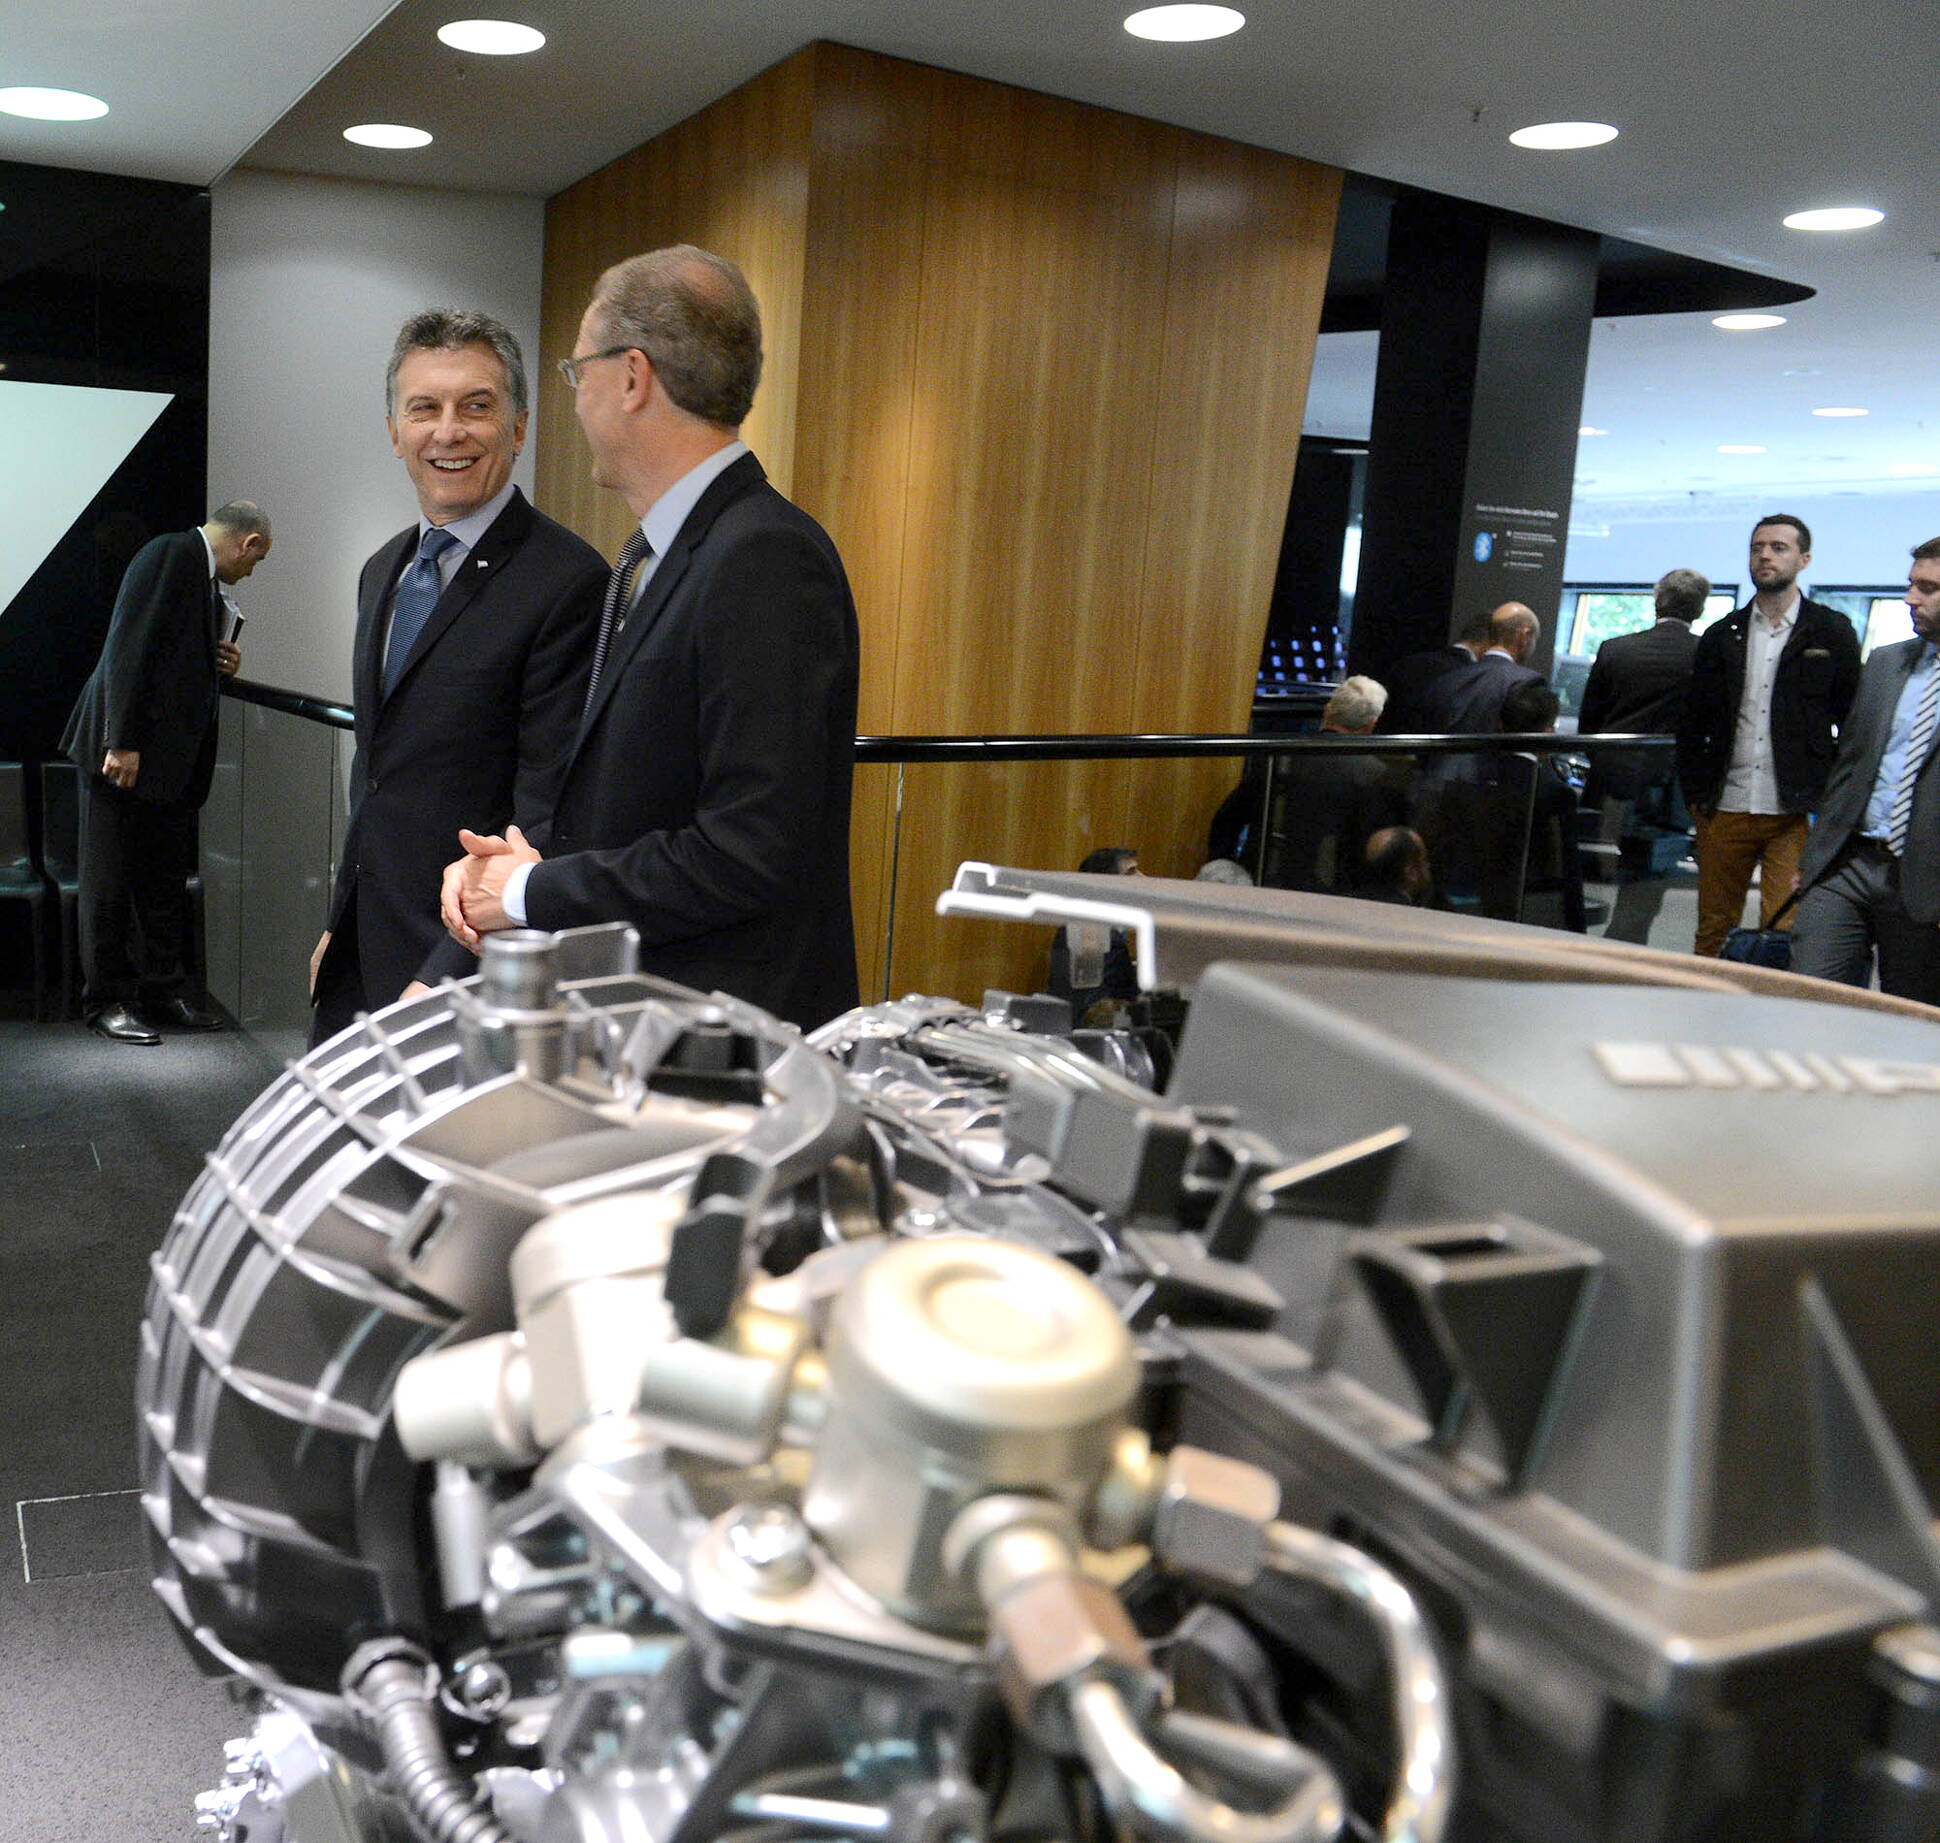 El presidente Macri visitó las instalaciones de las automotrices Volkswagen y Mercedes Benz en Alemania